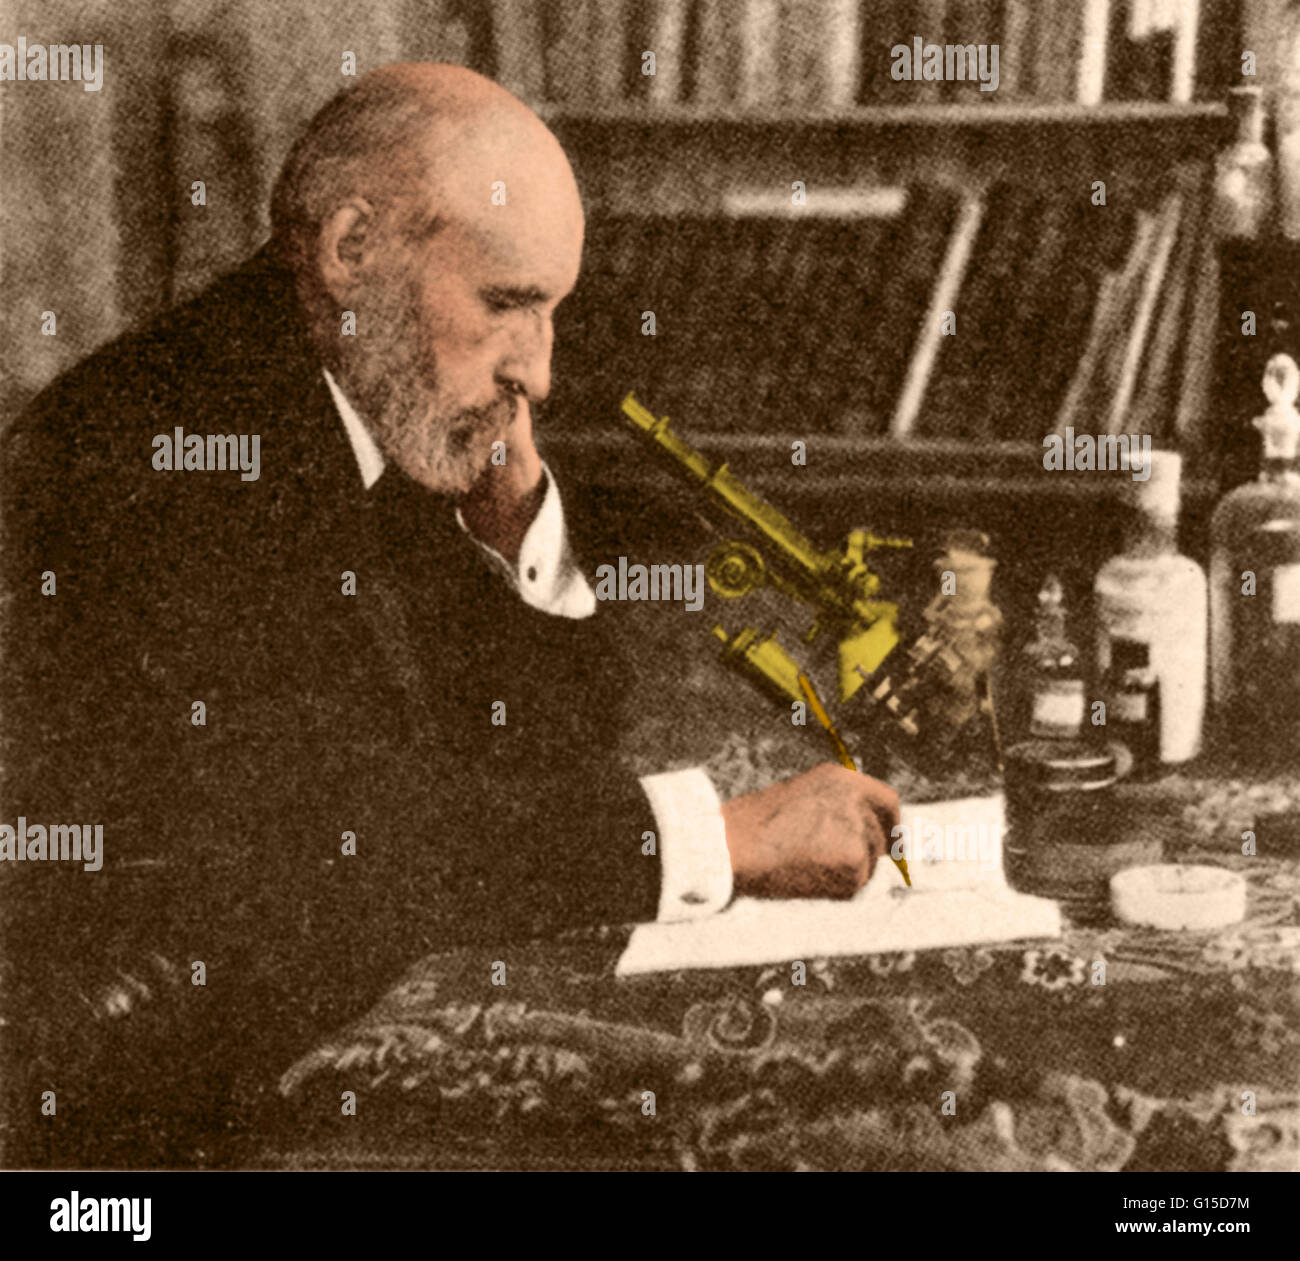 Santiago Ramón y Cajal (1852-1934) war eine spanische Pathologen, Histologist, Neurowissenschaftler und Nobelpreisträger (1906). Seine bahnbrechenden Untersuchungen der mikroskopischen Struktur des Gehirns waren originell: er wird von vielen als der Vater von Moder Stockfoto